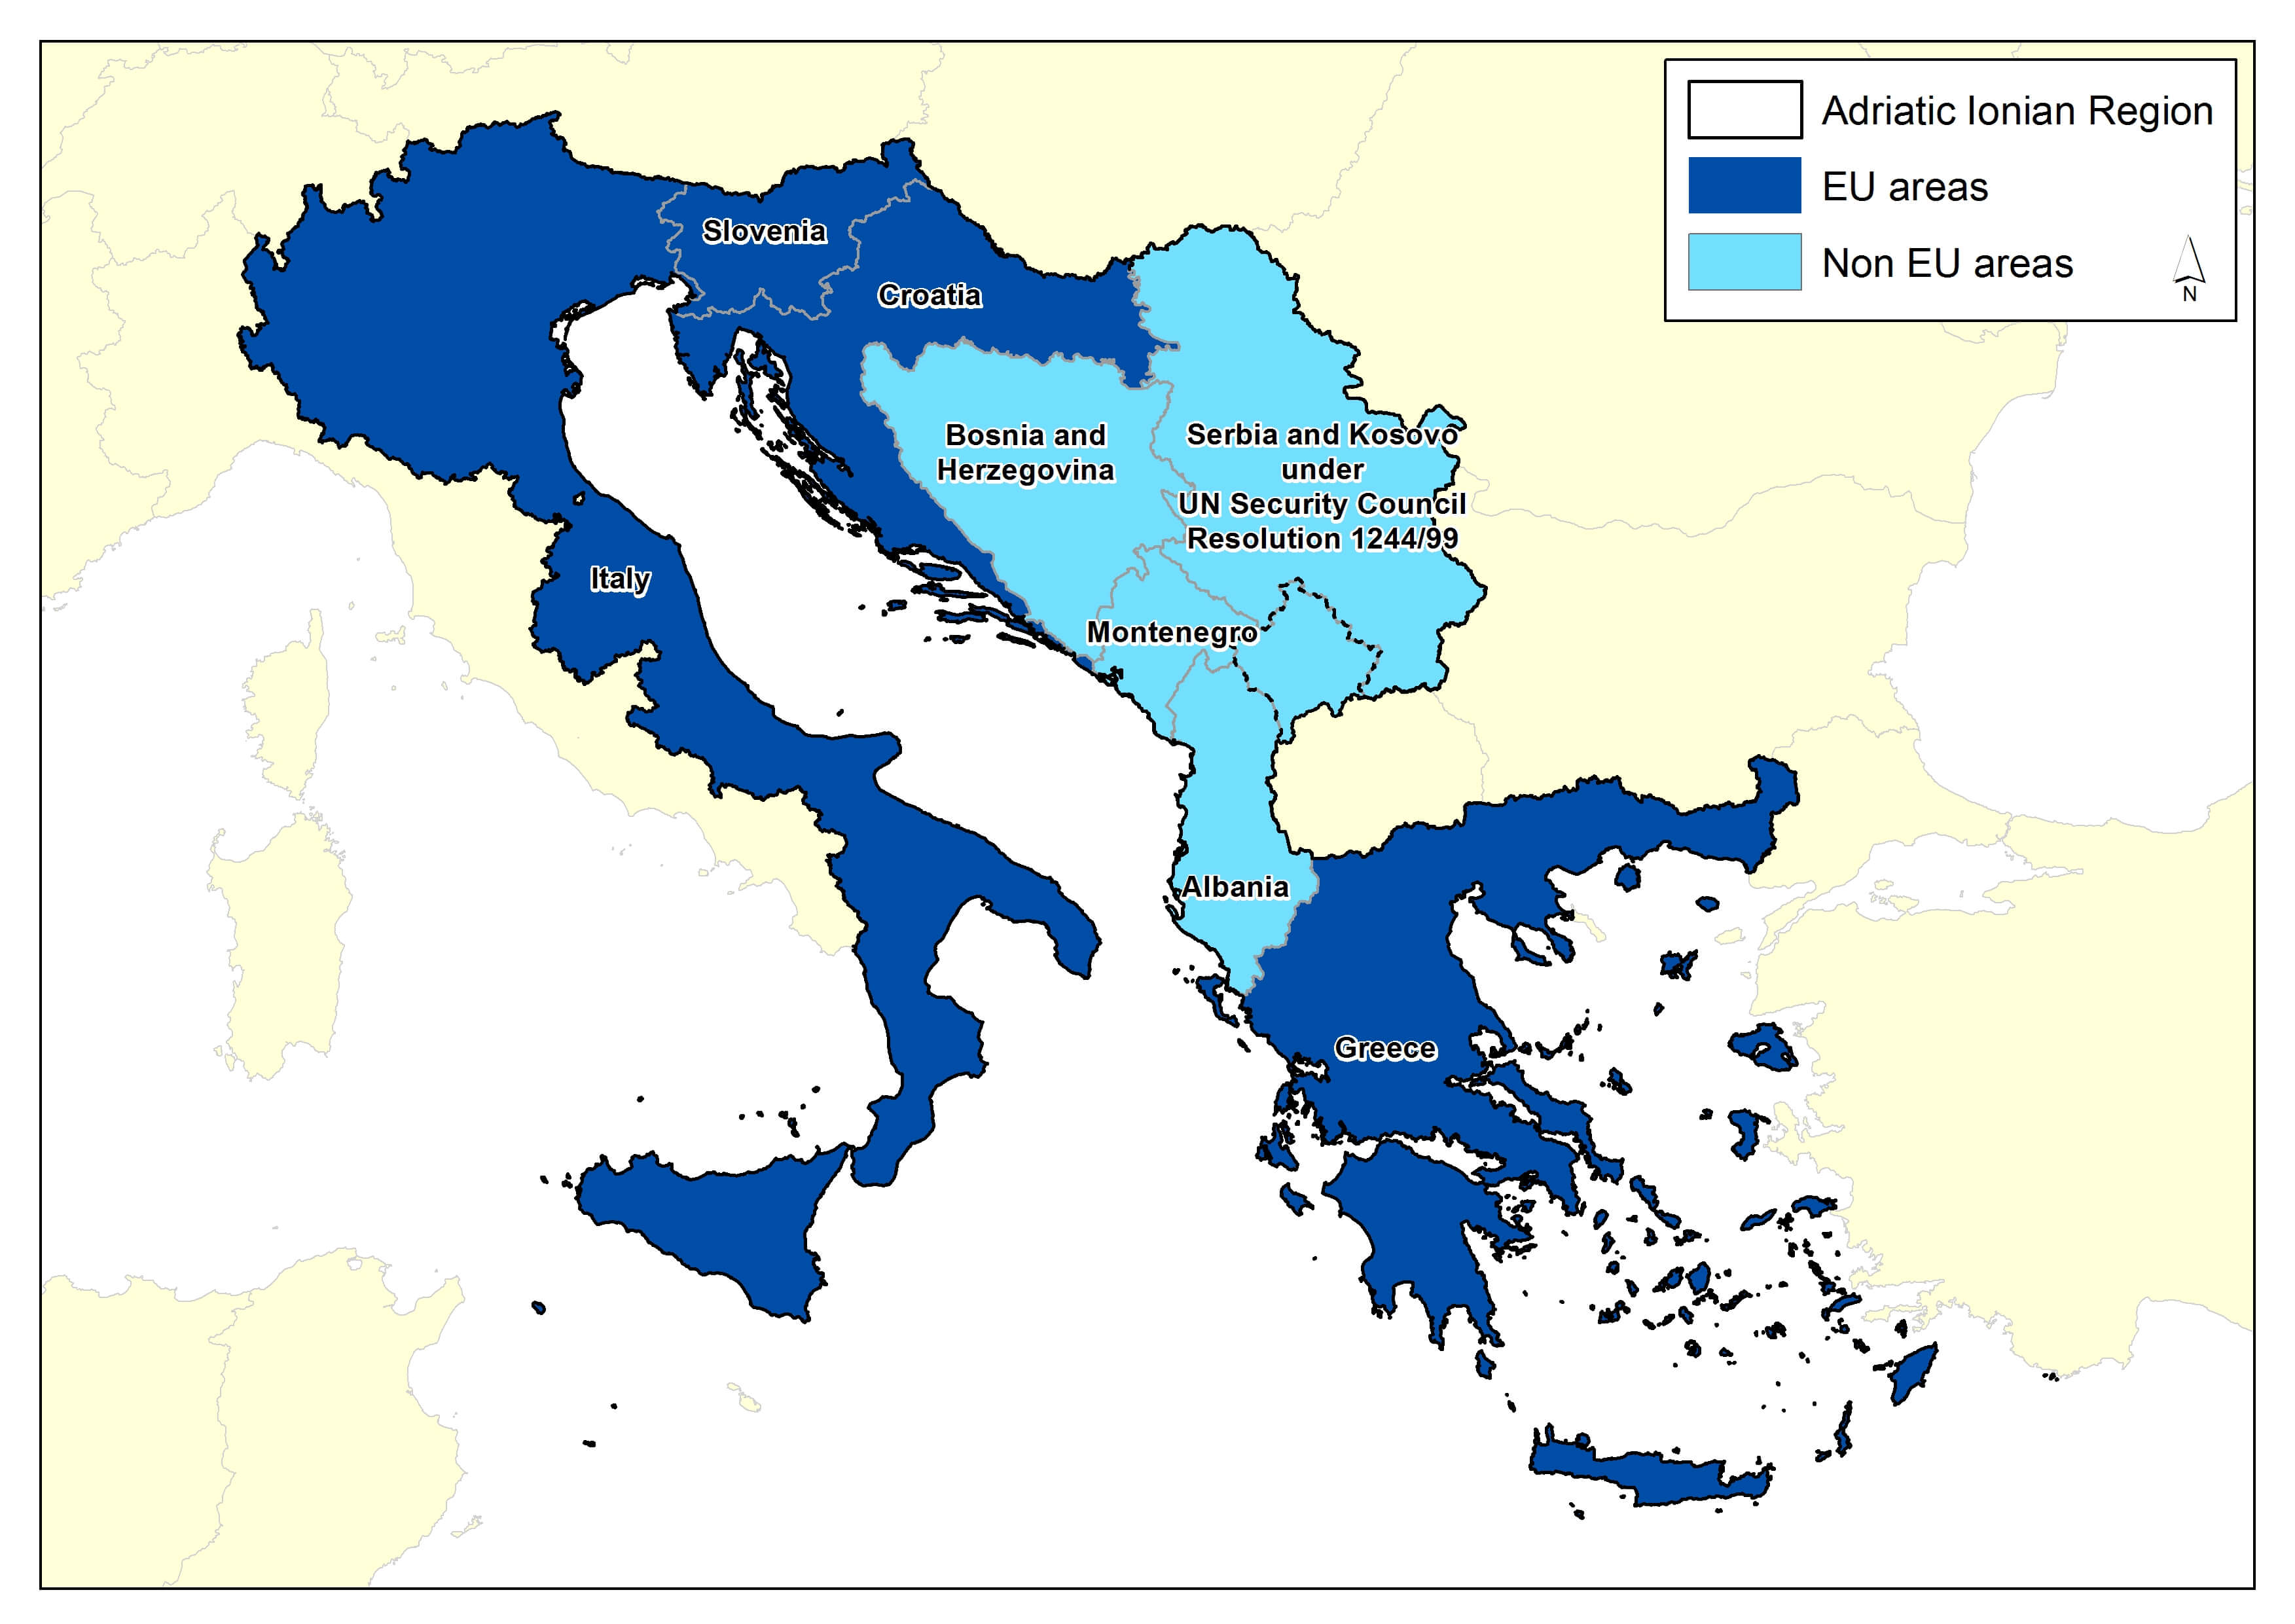 Adriatic-Ionian Area